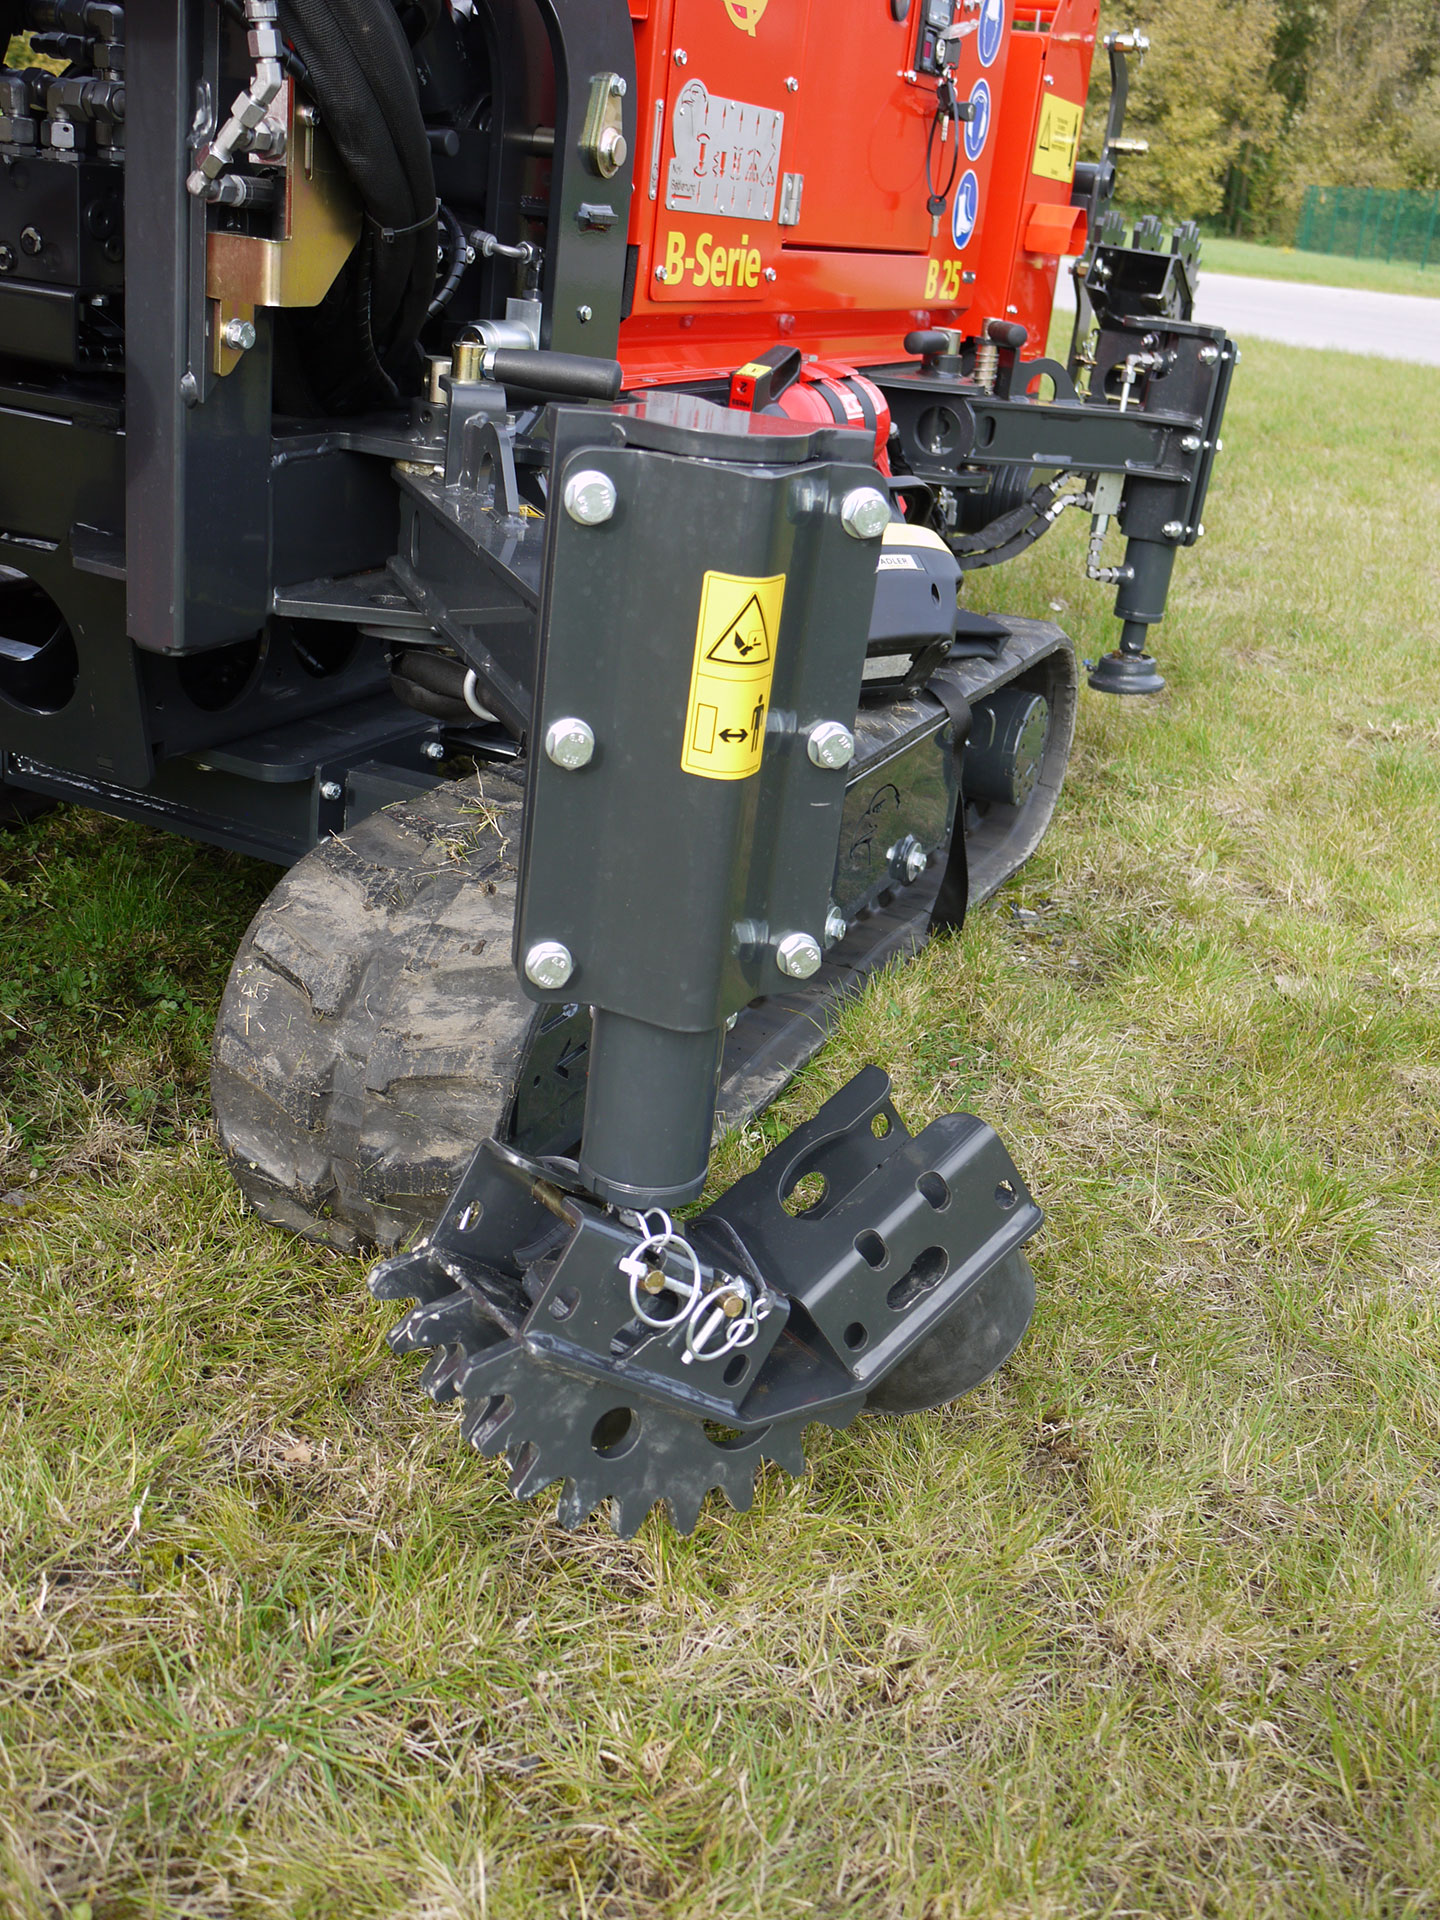 Stützfußschuhset für Gras und Halle mit Antirutschsystem am Bohrgerät B-25 SF für Schraubfundamente von ADLER Arbeitsmaschinen.